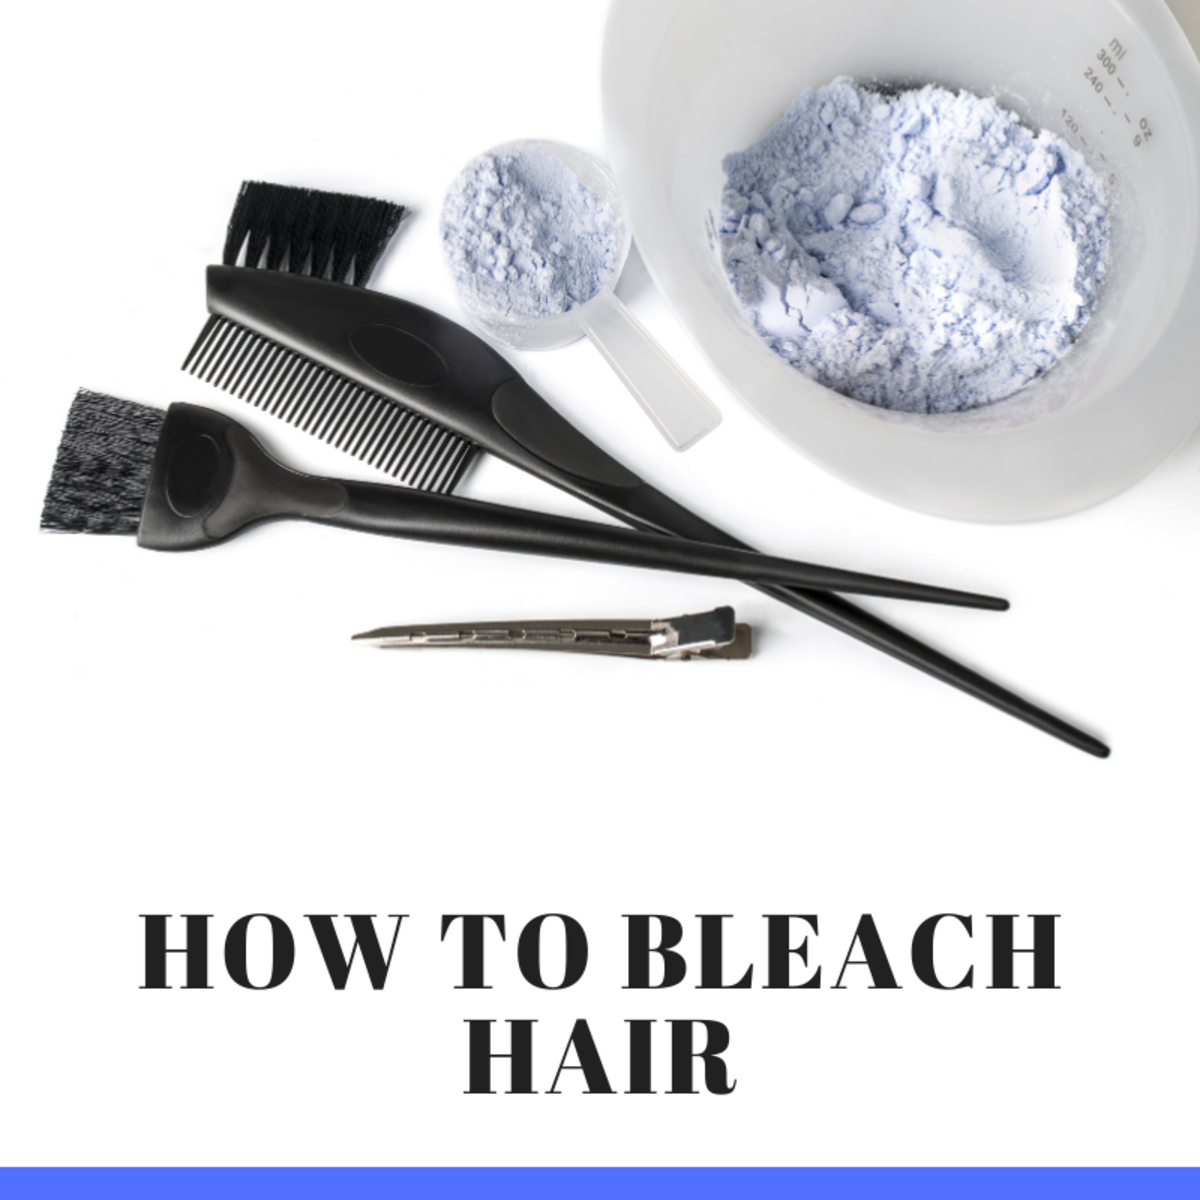 How to Bleach Hair